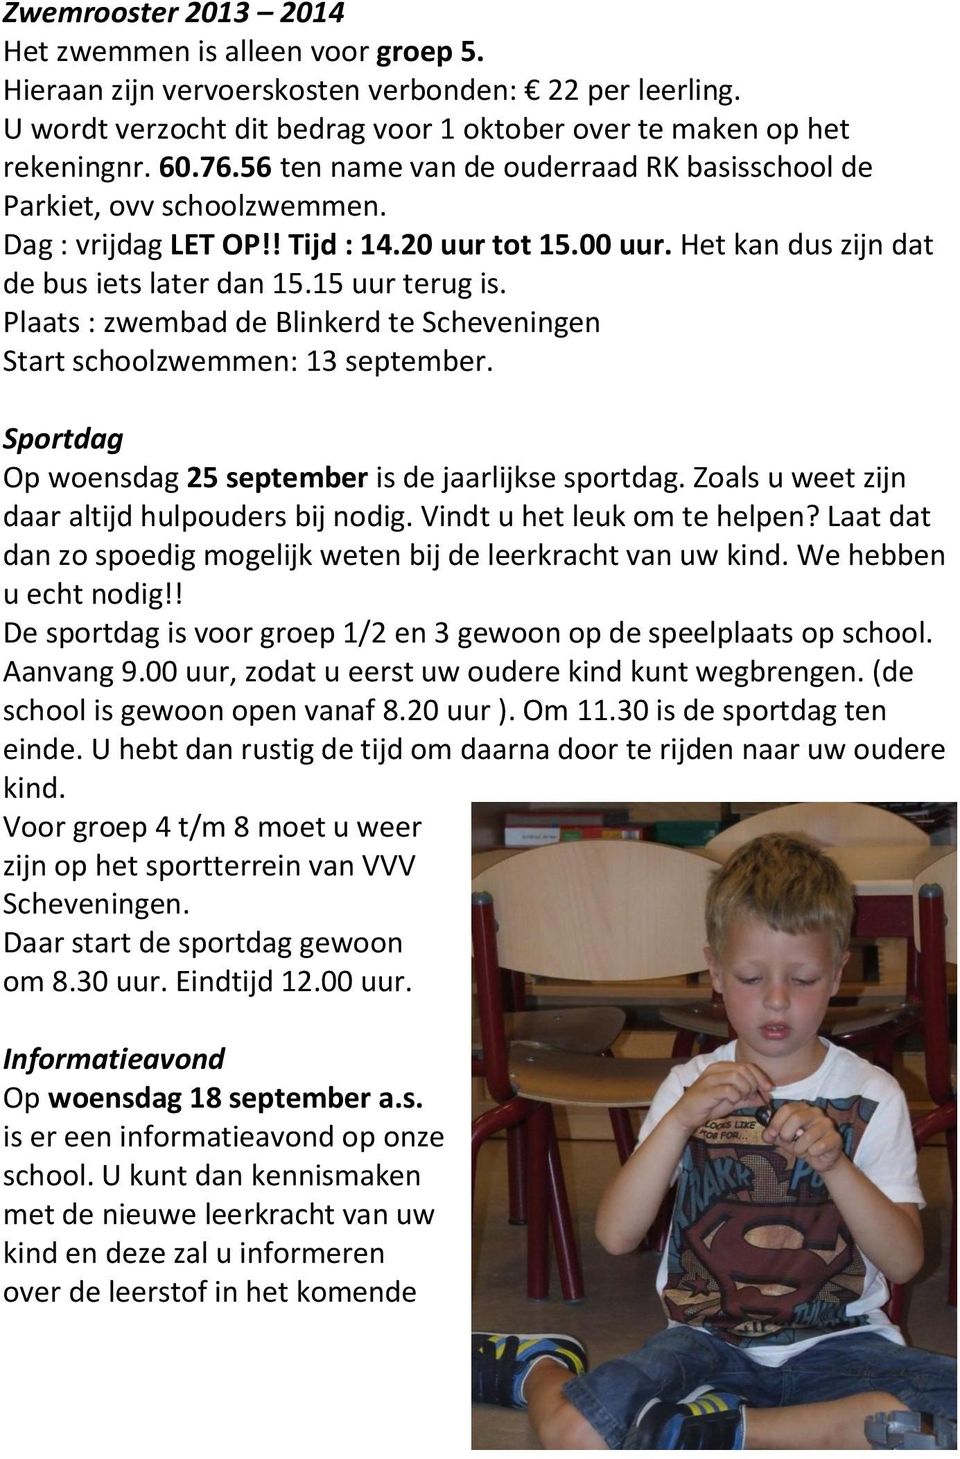 Plaats : zwembad de Blinkerd te Scheveningen Start schoolzwemmen: 13 september. Sportdag Op woensdag 25 september is de jaarlijkse sportdag. Zoals u weet zijn daar altijd hulpouders bij nodig.